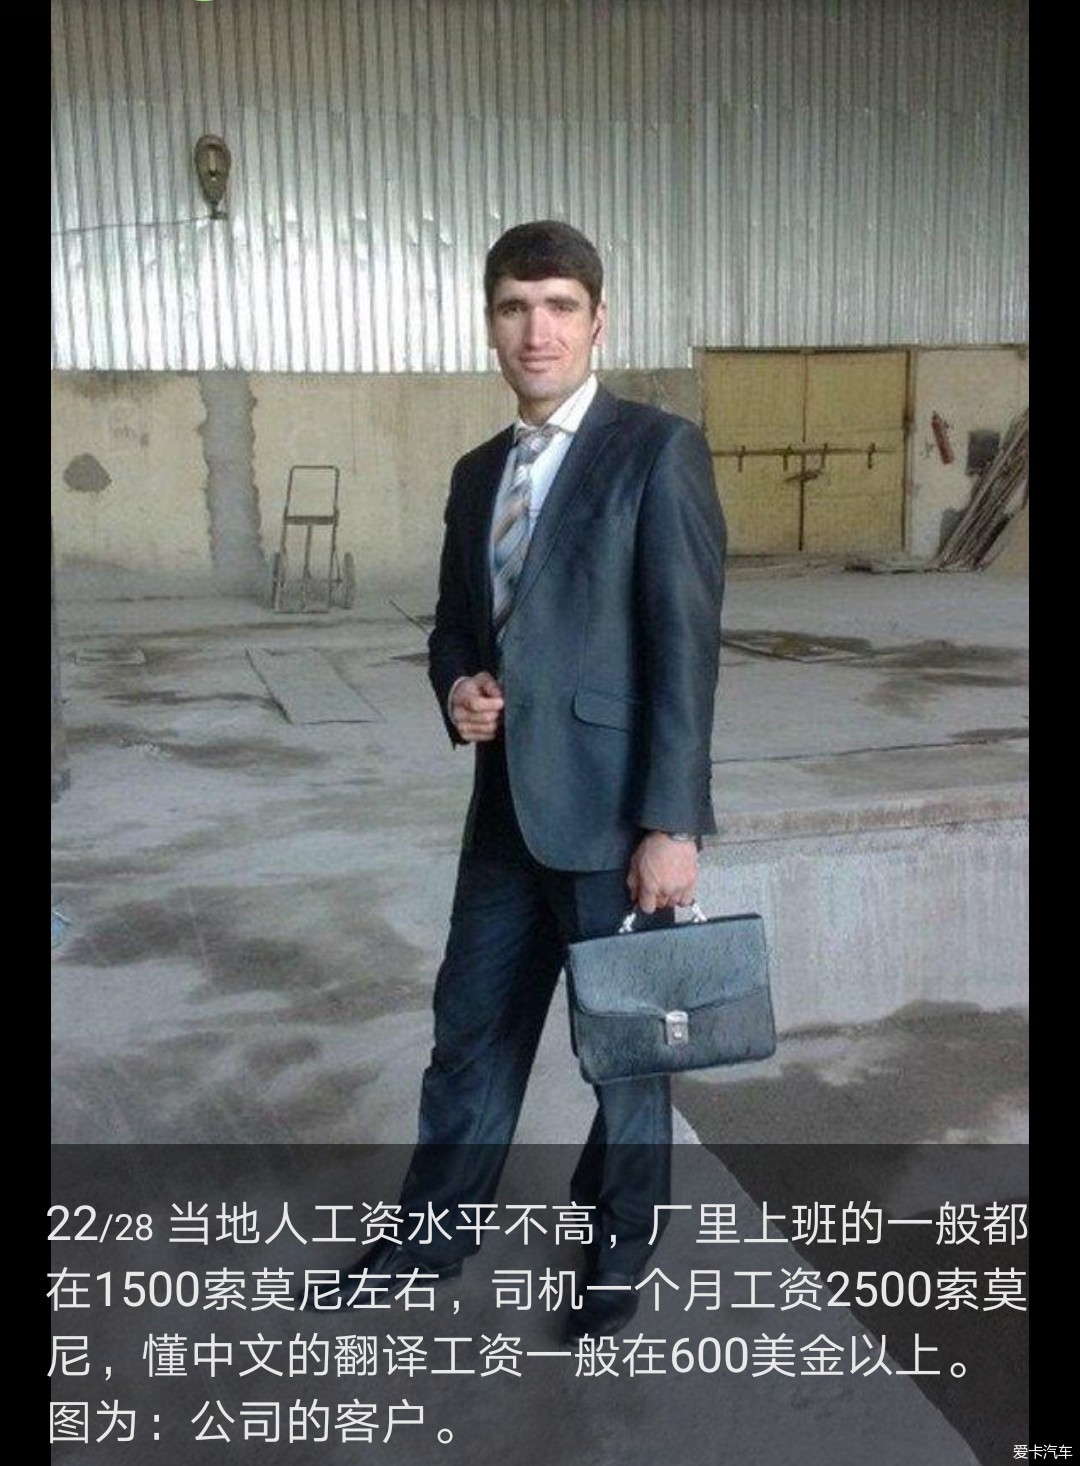 我在中亚国家塔吉克斯坦打工的生活(转)